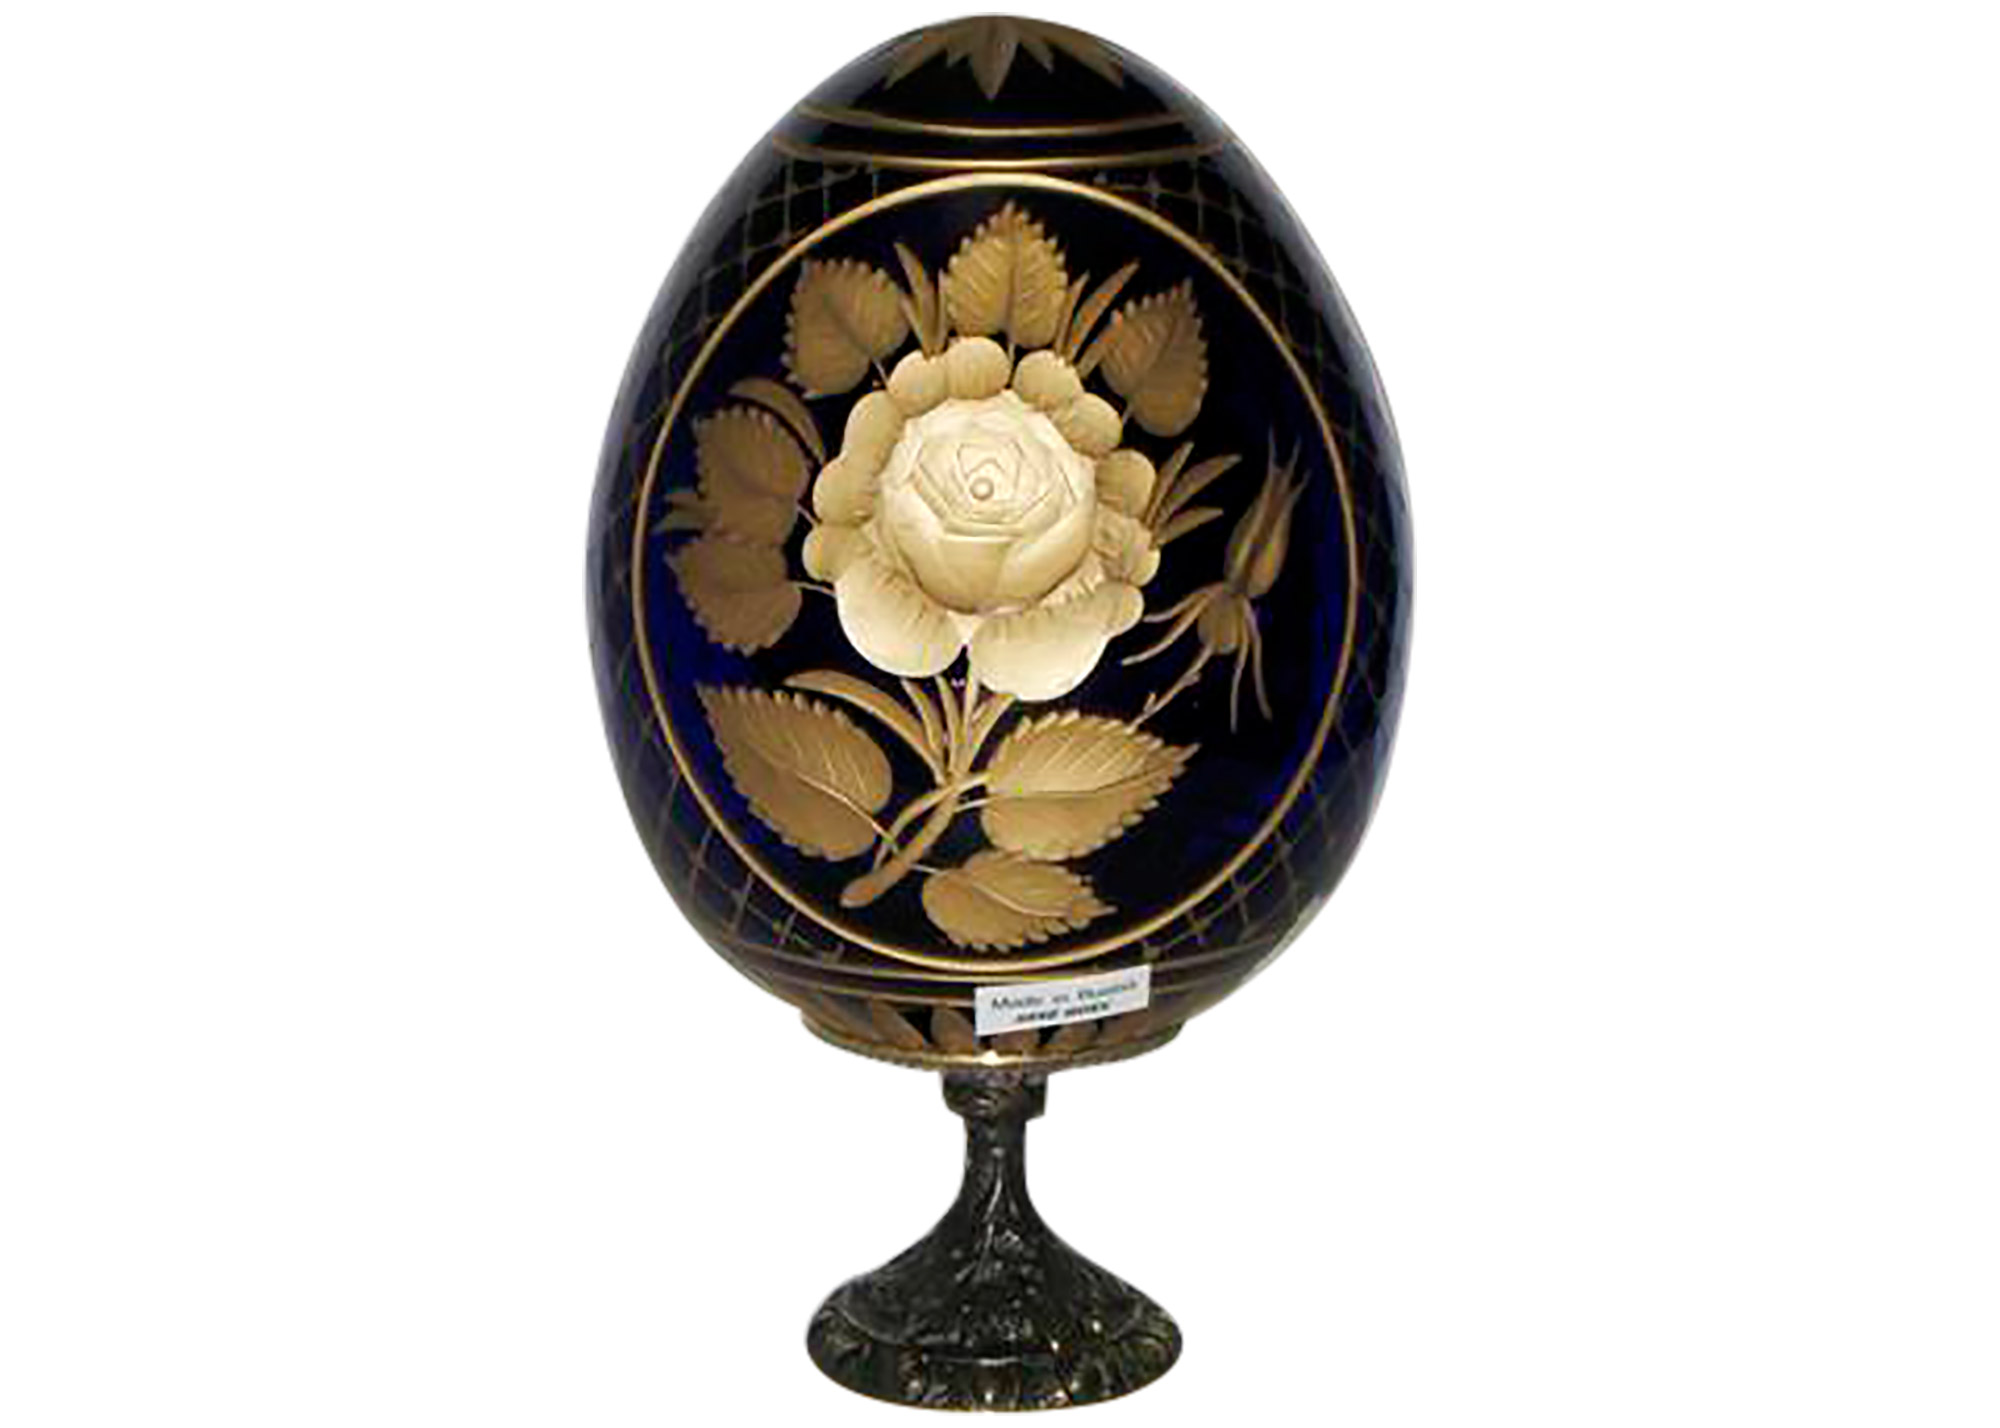 Buy Fruits & Roses BLUE Crystal Glass Egg at GoldenCockerel.com